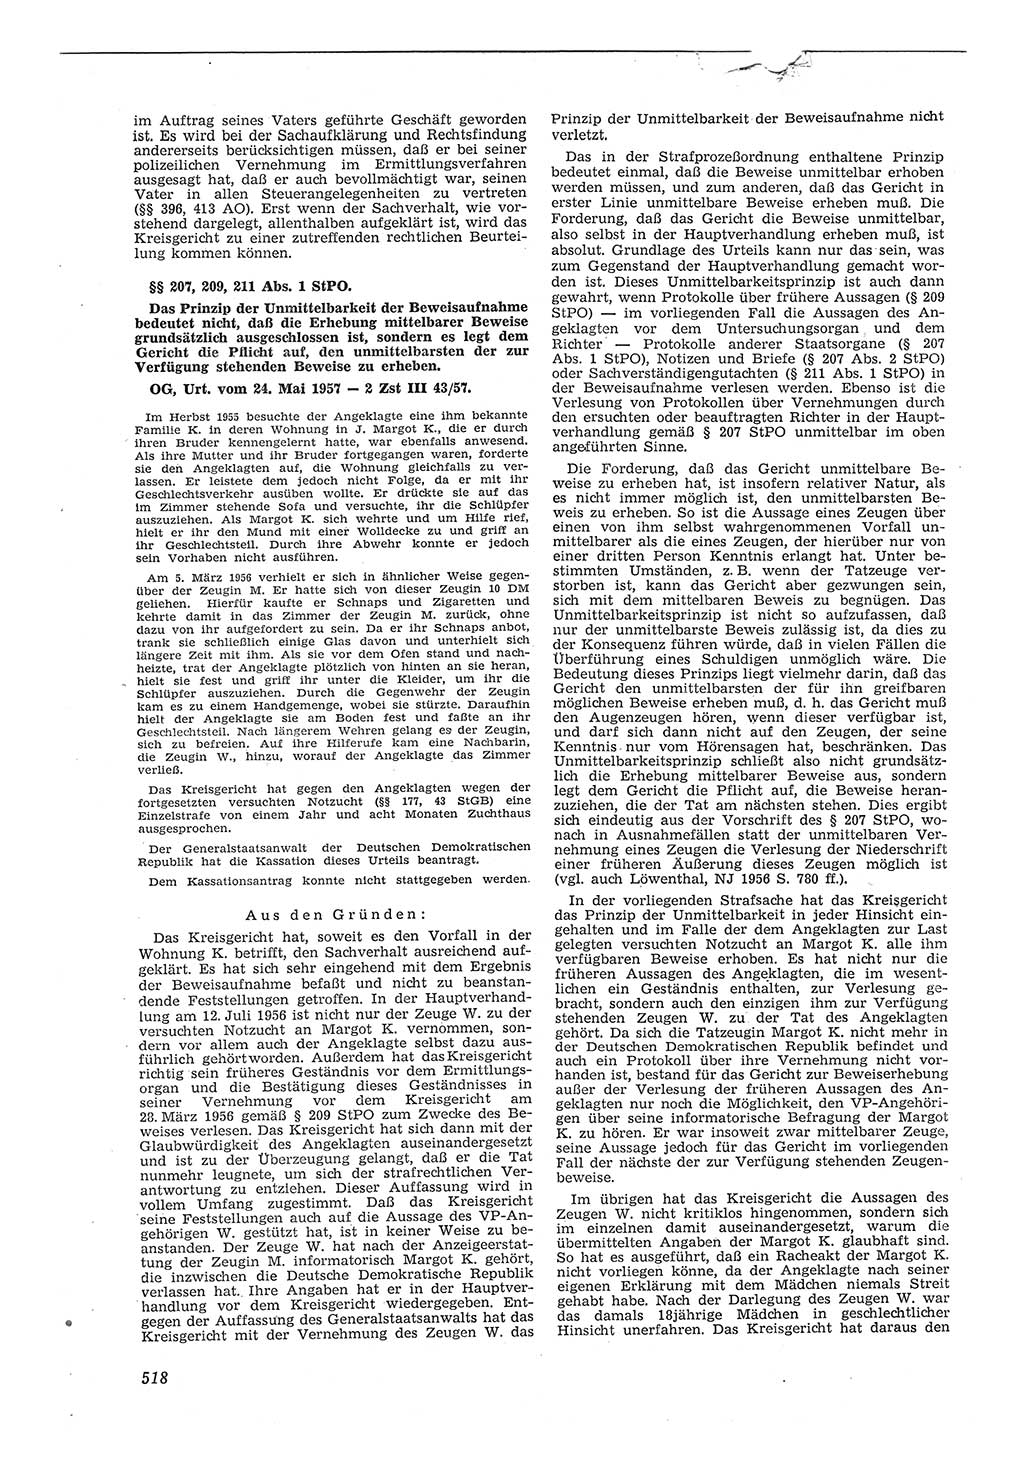 Neue Justiz (NJ), Zeitschrift für Recht und Rechtswissenschaft [Deutsche Demokratische Republik (DDR)], 11. Jahrgang 1957, Seite 518 (NJ DDR 1957, S. 518)